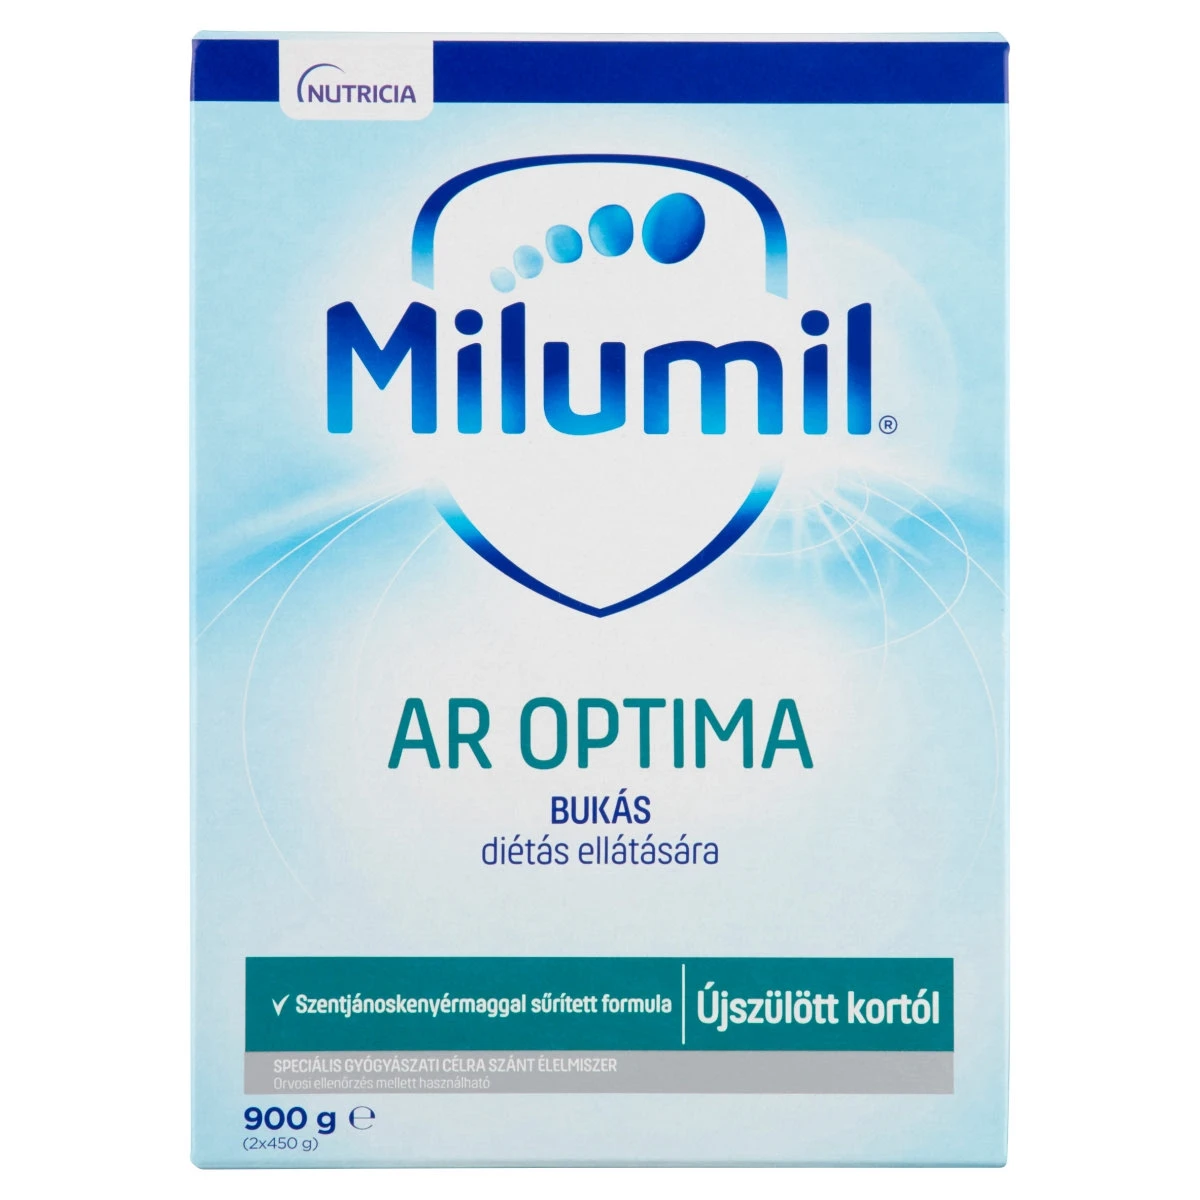 Milumil AR Optima speciális gyógyászati célra szánt tápszer újszülött kortól 900 g